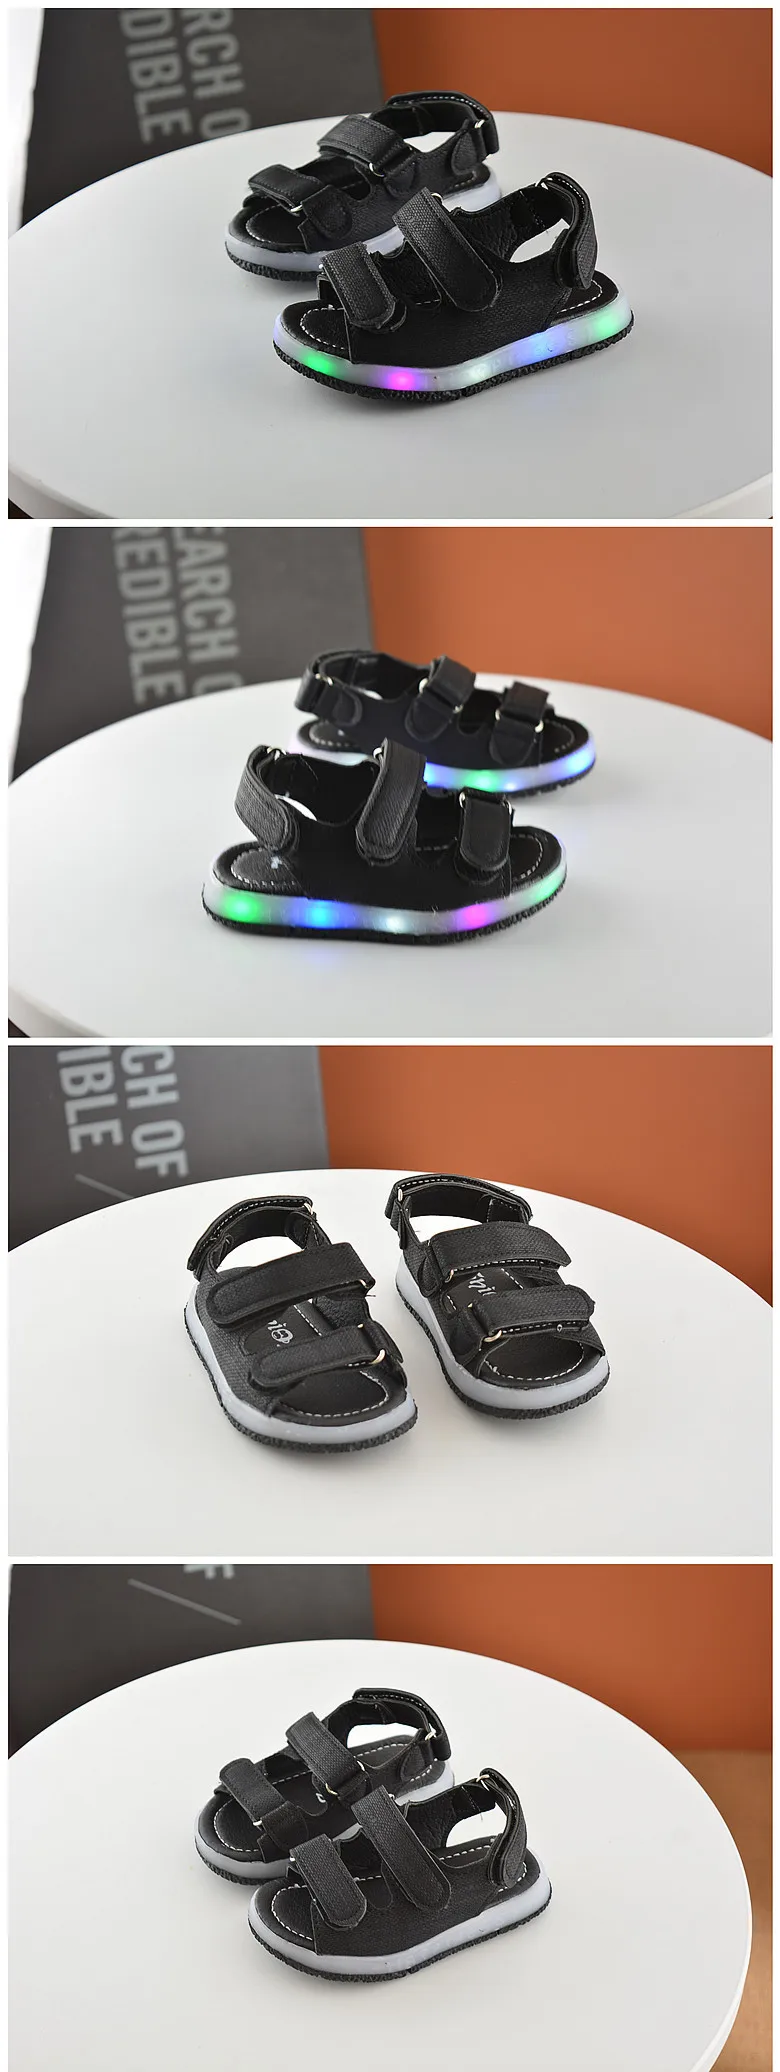 Летние детские сандалии boys'светоизлучающие сандалии для девочек Babies'shoes, пляжная обувь, светодиодная обувь